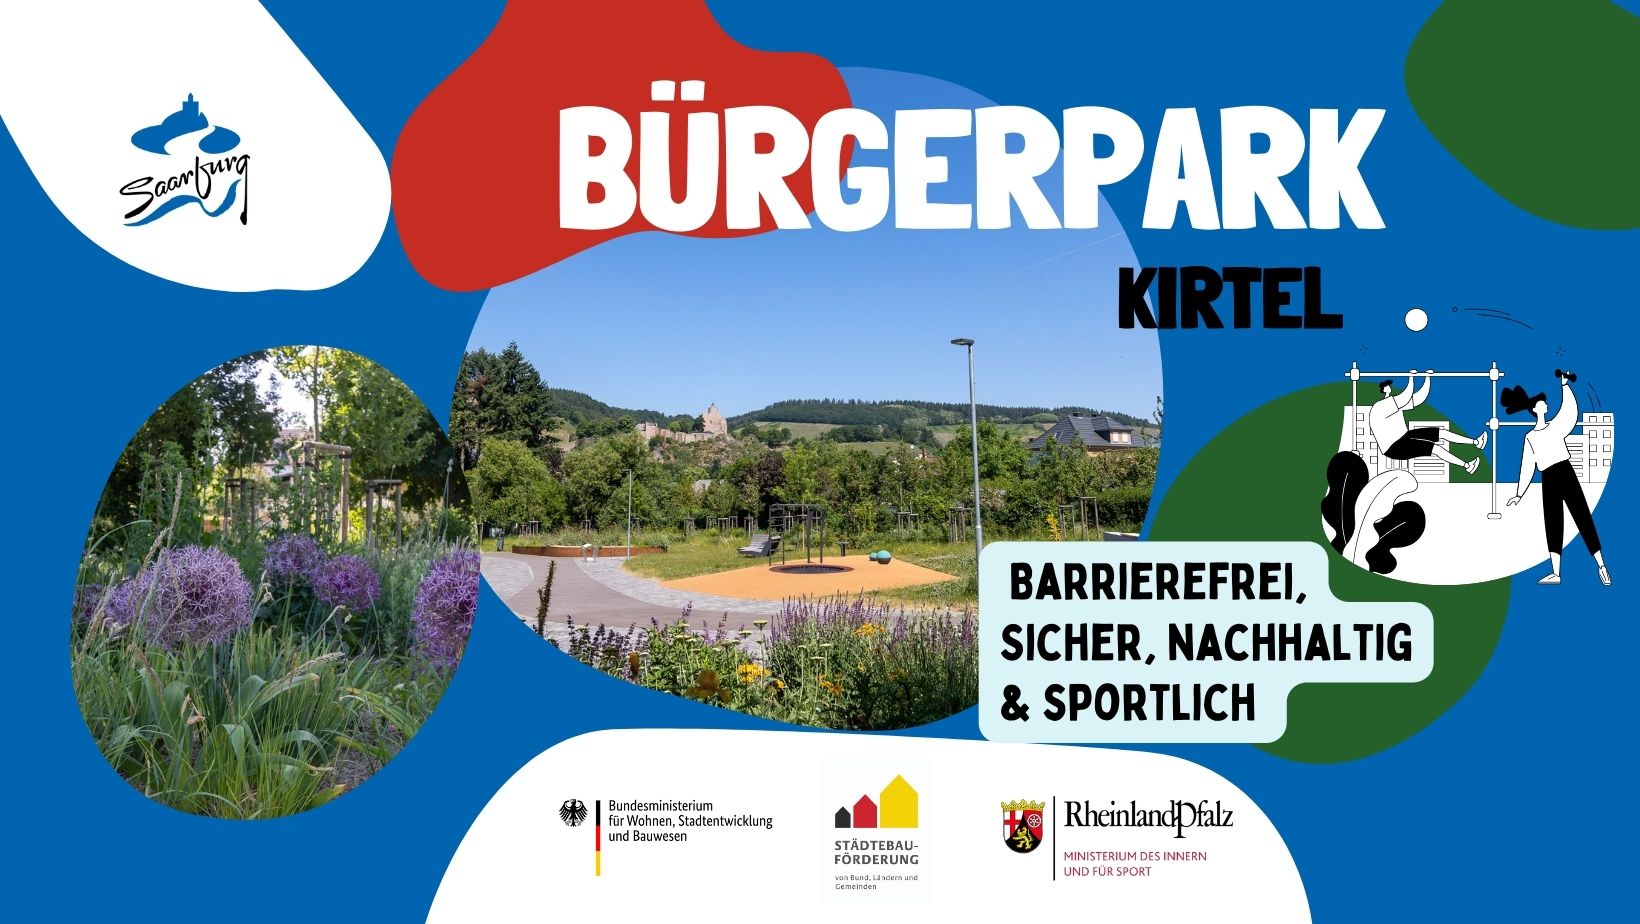 Bürgerpark Kirtel 